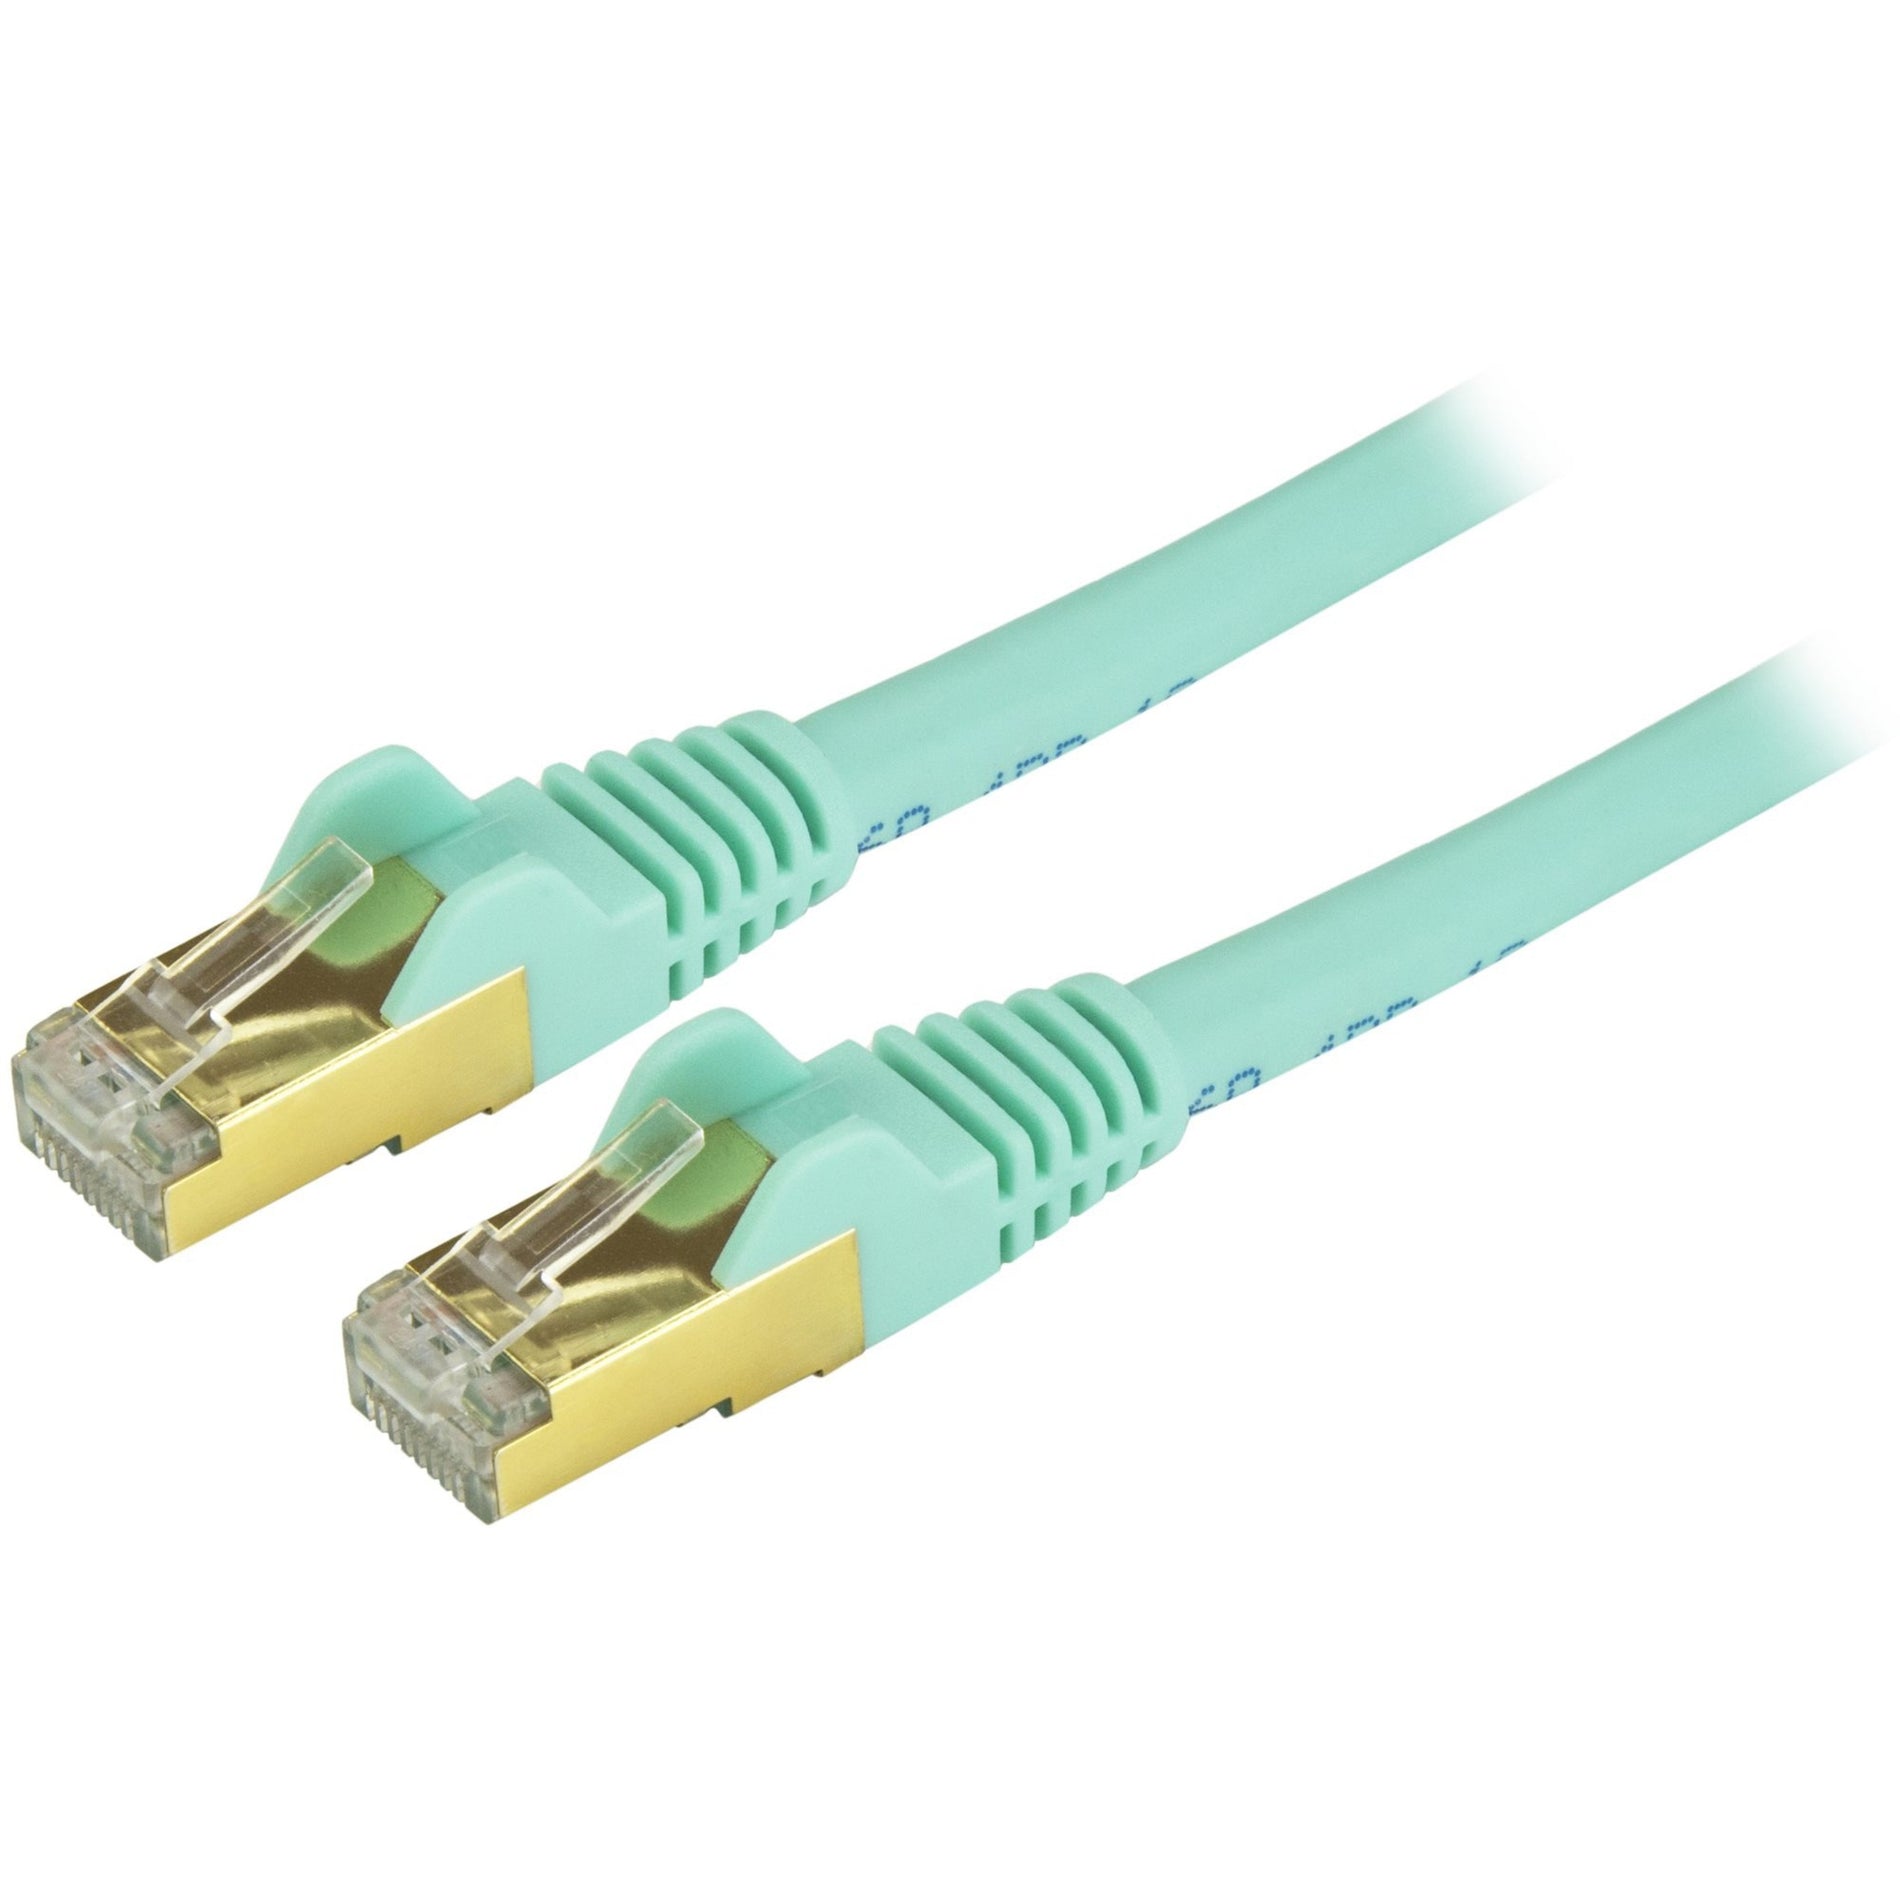 StarTech.com C6ASPAT30AQ Cat6a Ethernet Patch Cable - Shielded (STP) - 30 ft., Aqua, Long Ethernet Cord